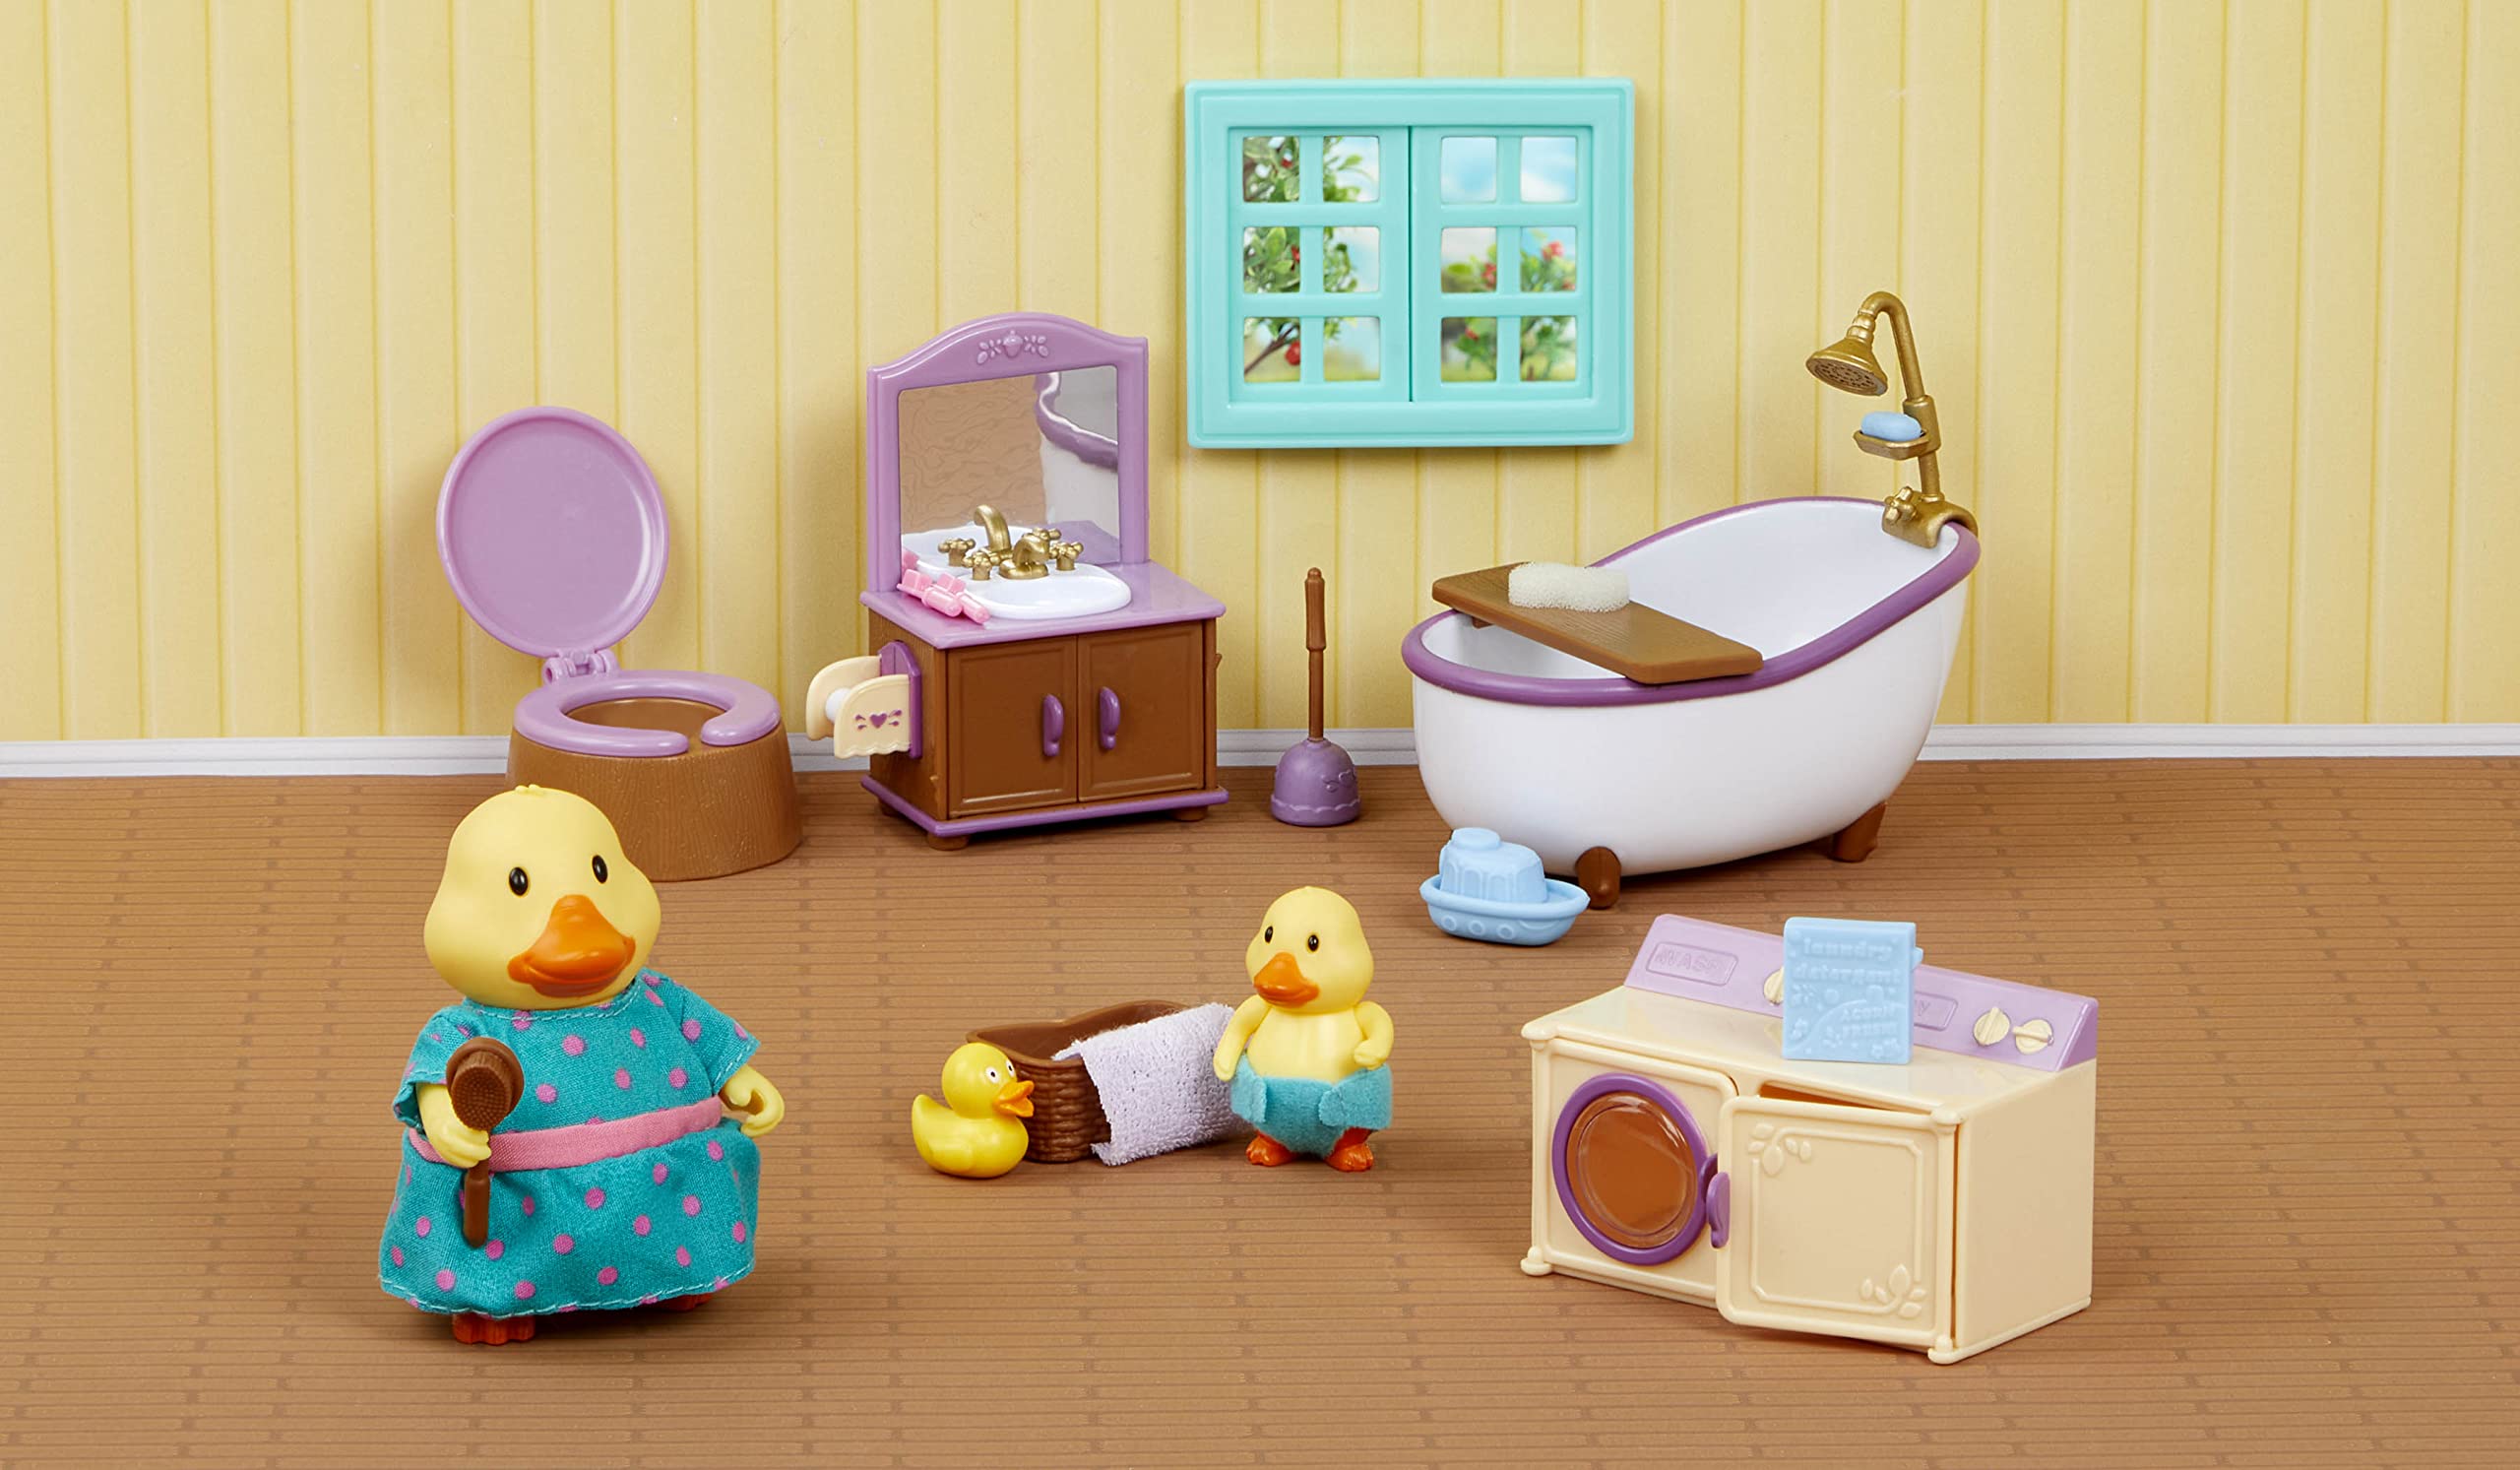 Li'l Woodzeez Lil Woodzeez – Dollhouse Furniture – Animal Figurines – Bath & Laundry Set – Kids 3 Years +